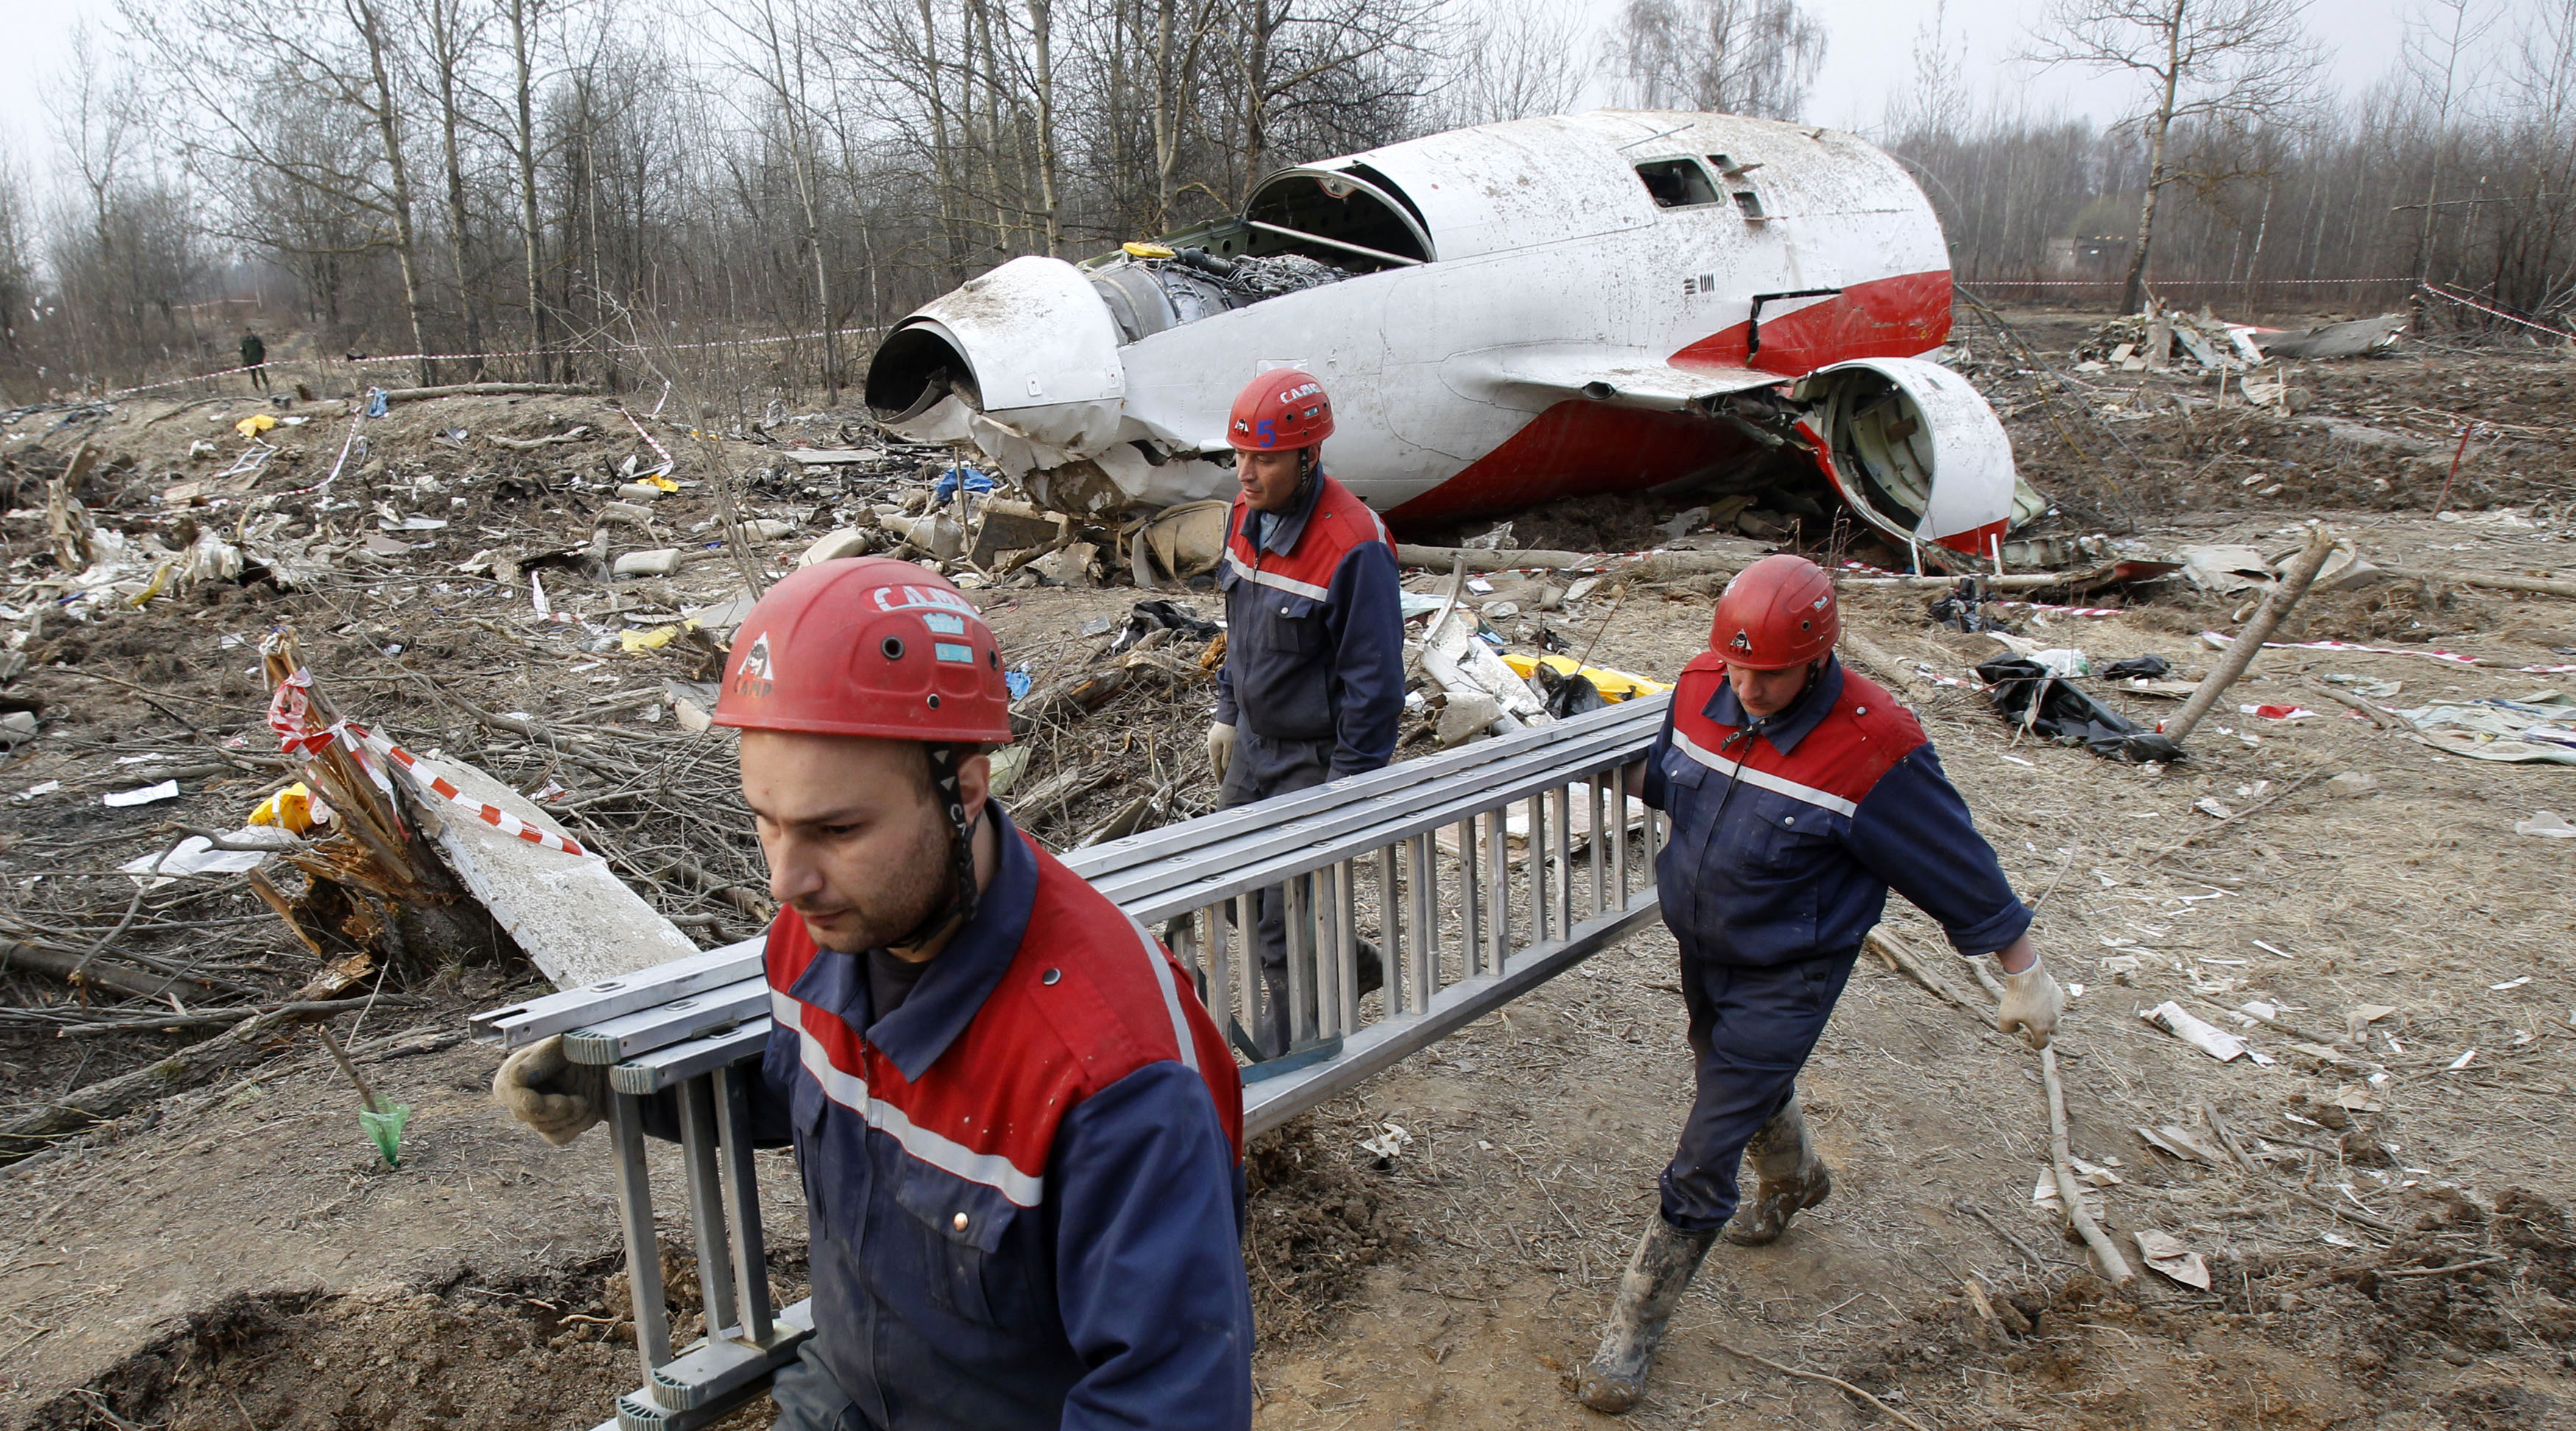 Валенса: в авиакатастрофе под Смоленском виноваты братья Качиньские